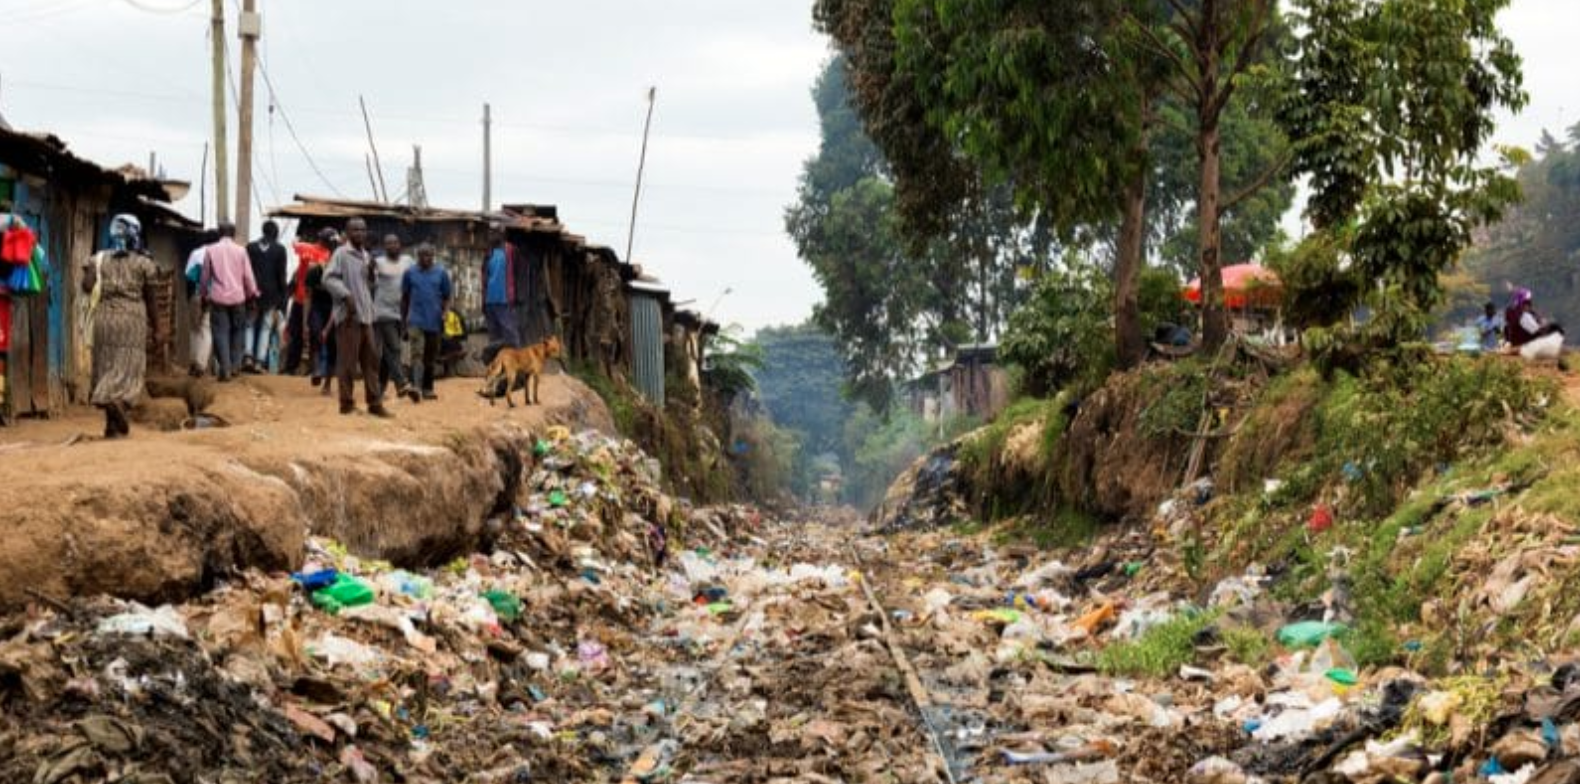 Kenya : l’application « Hatua » signale l’élimination illégale des déchets à Nairobi, en collaboration avec l’UE